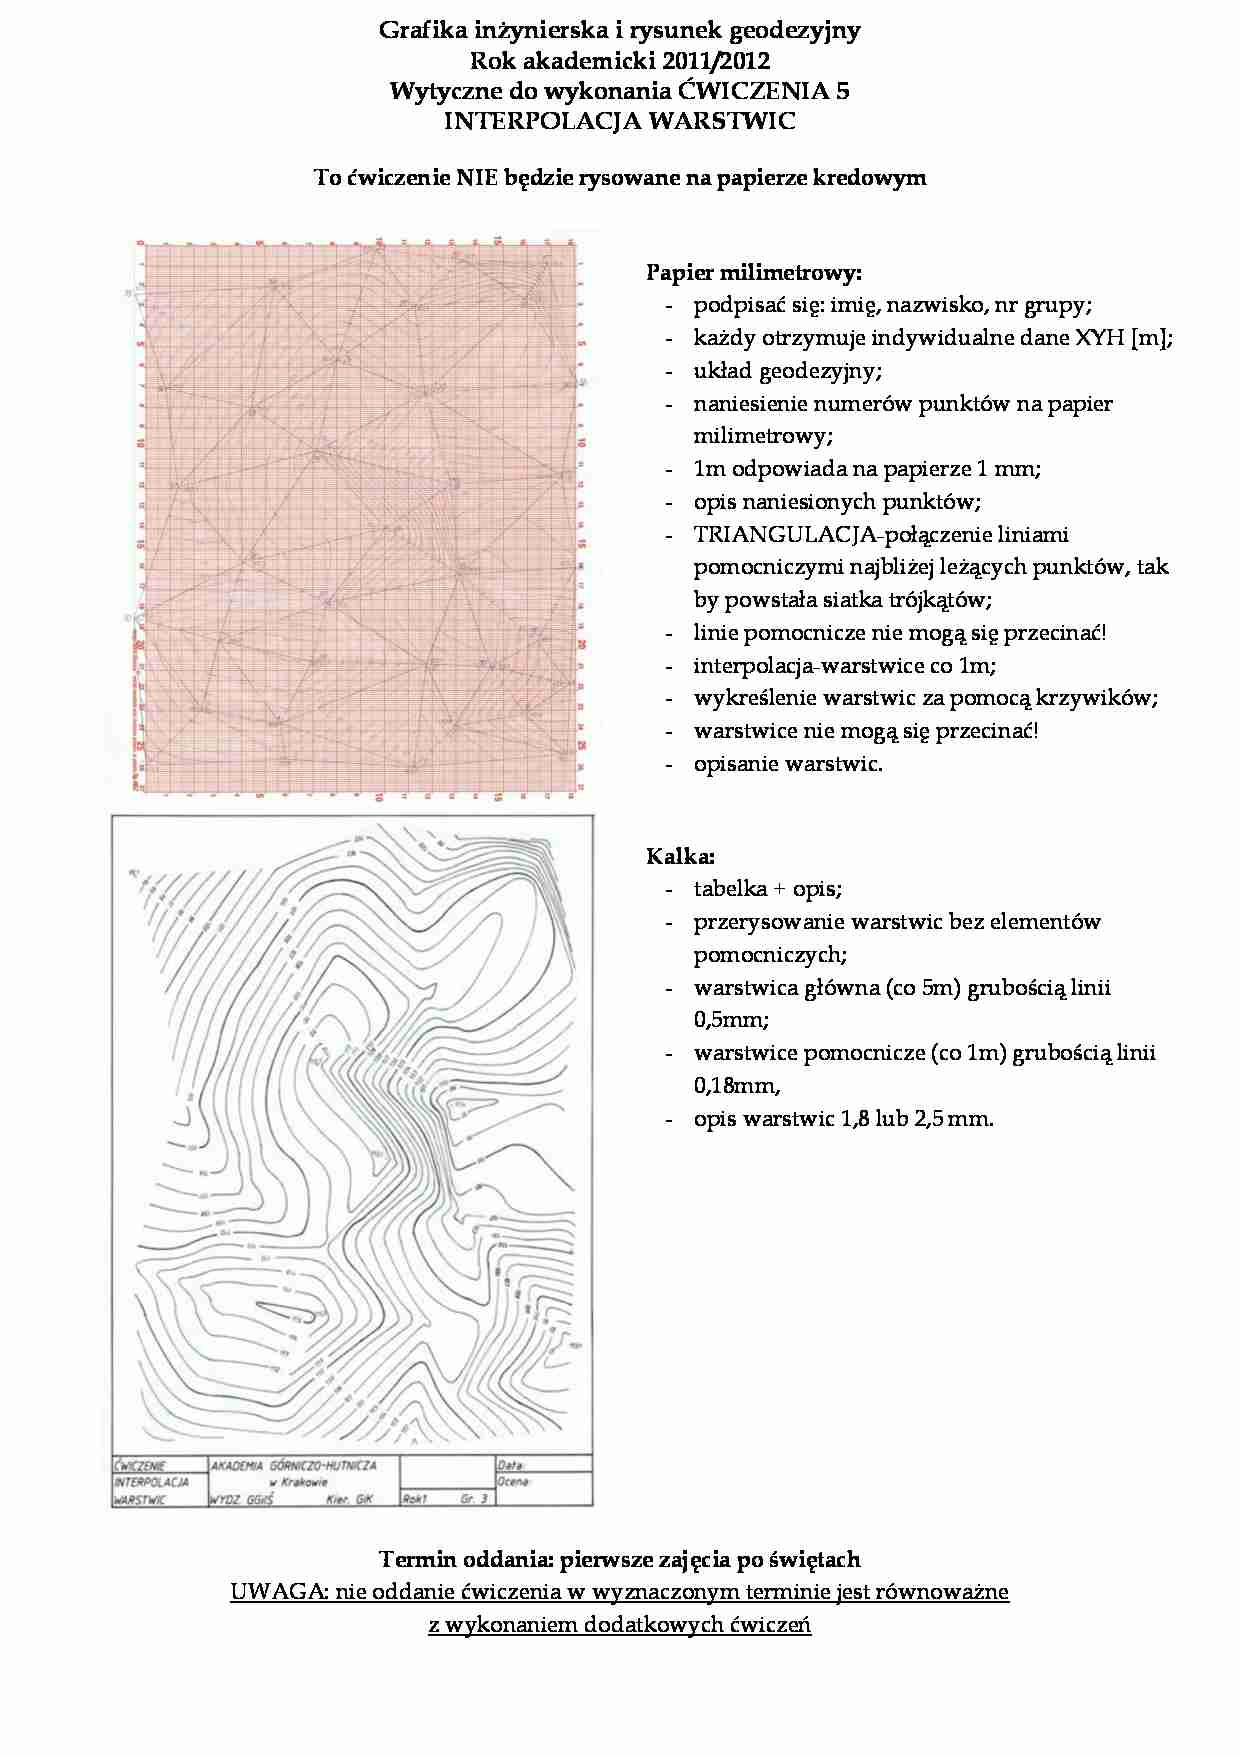 Grafika inżynierska i rysunek geodezyjny - interpolacja warstwic - strona 1